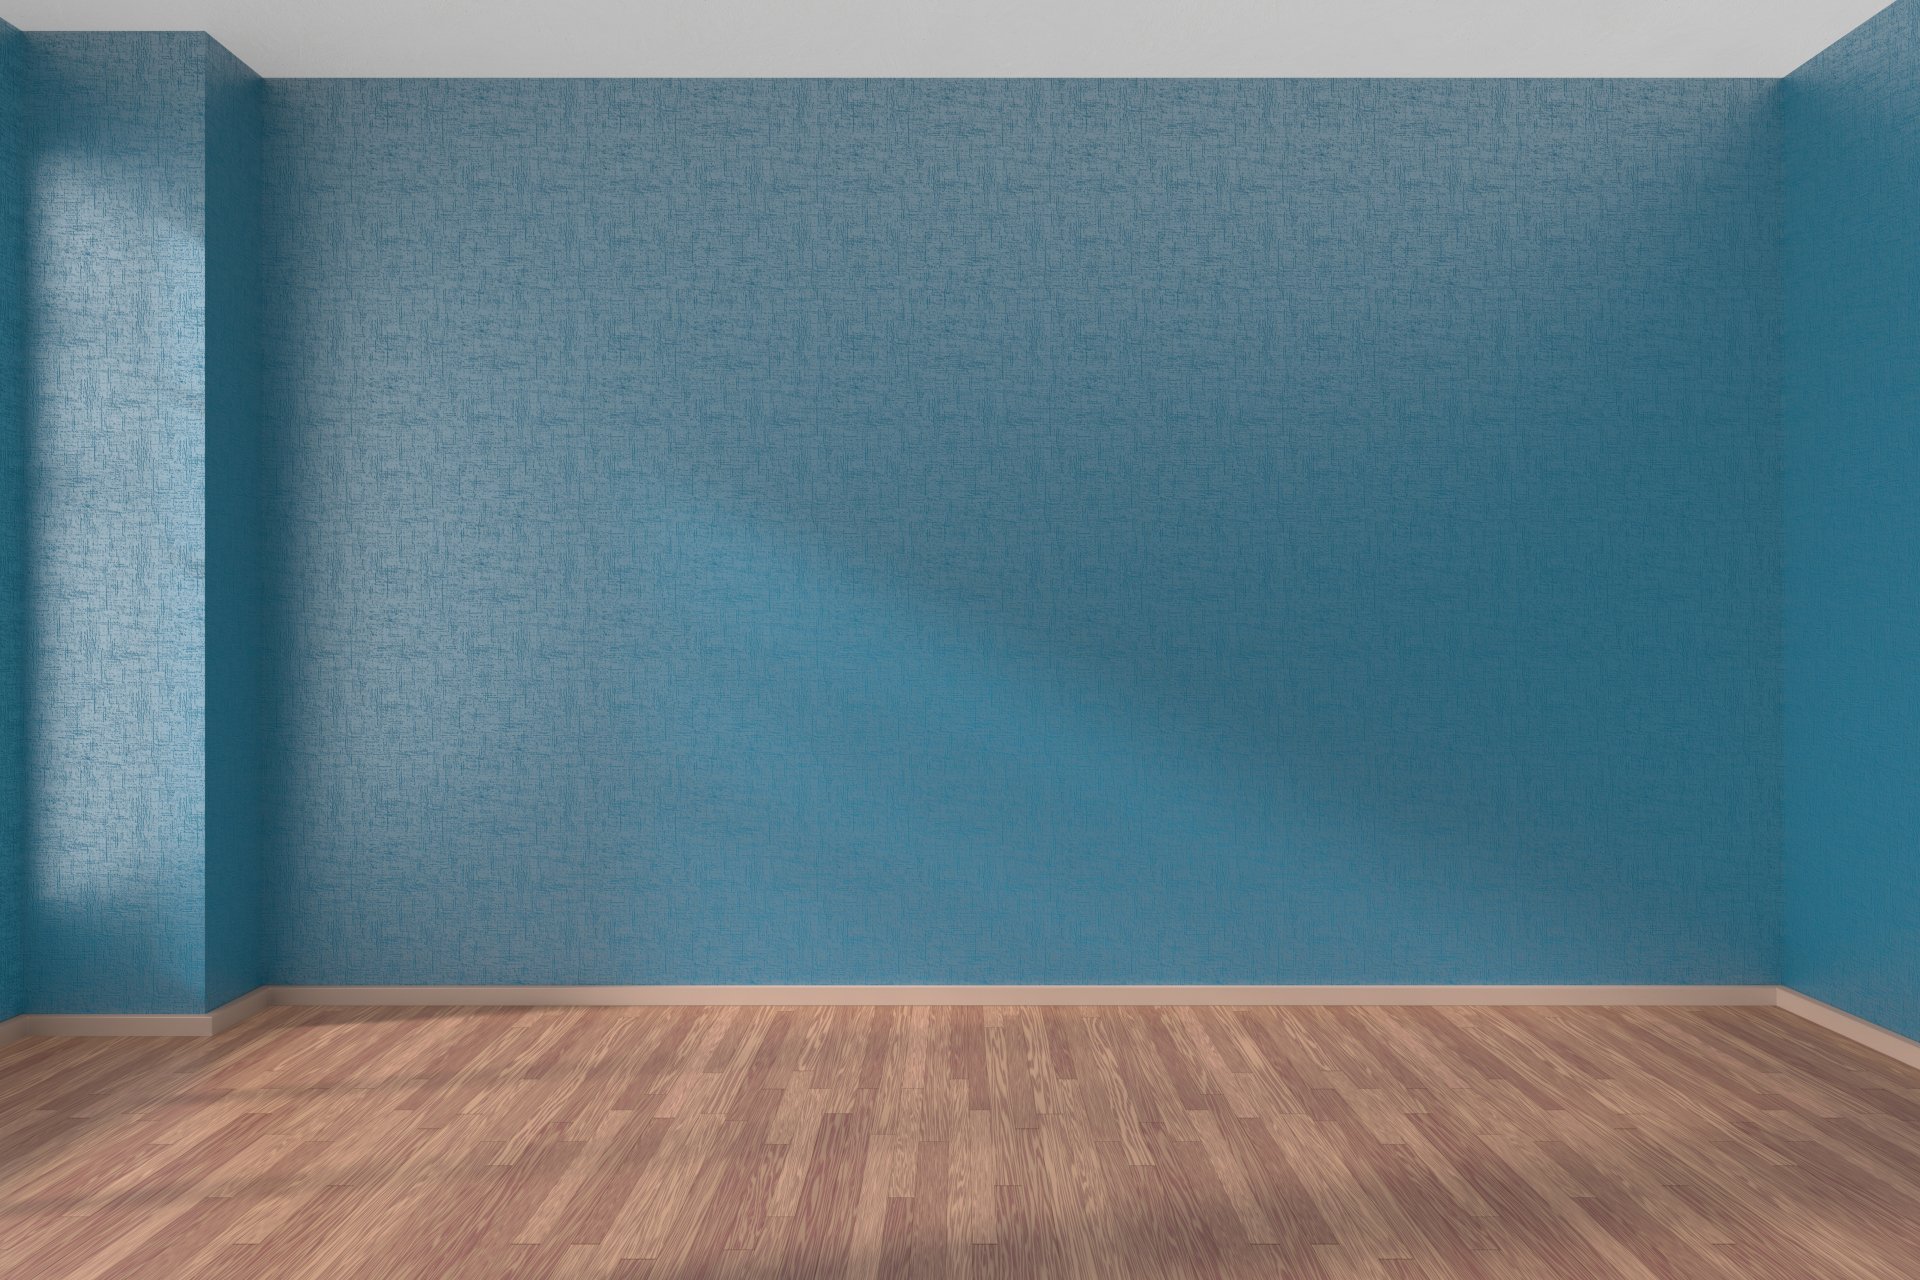 Пустая комната с синими стенами